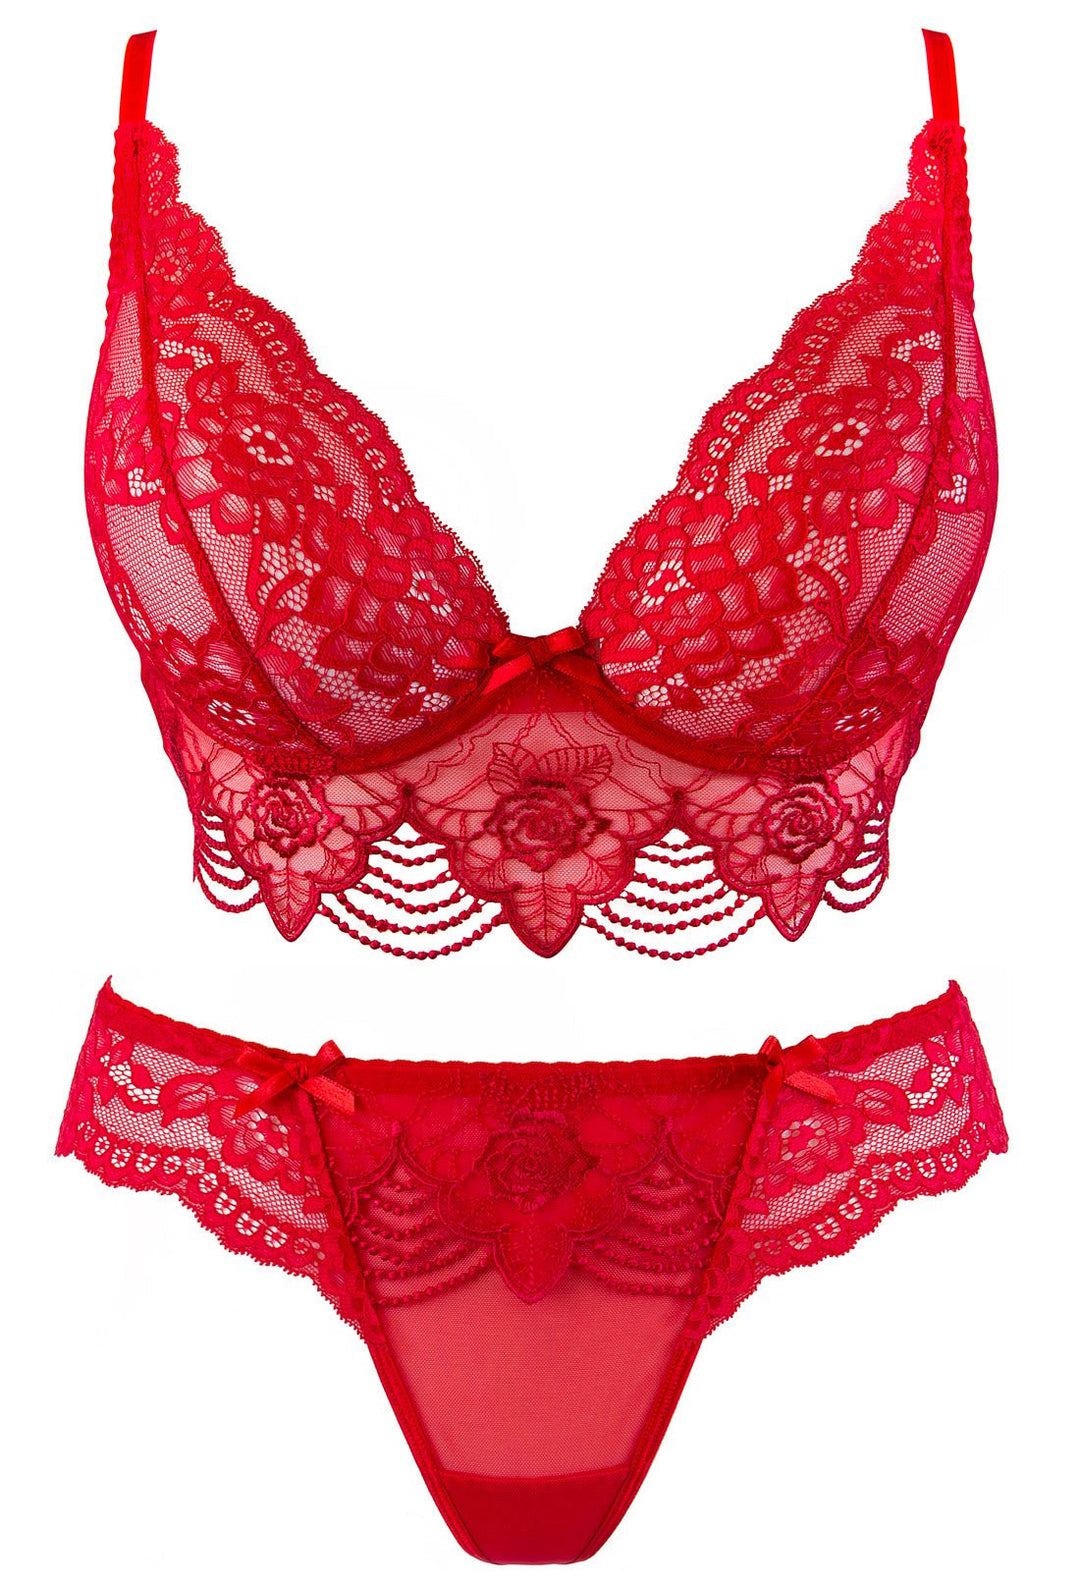 red lingerie set australia